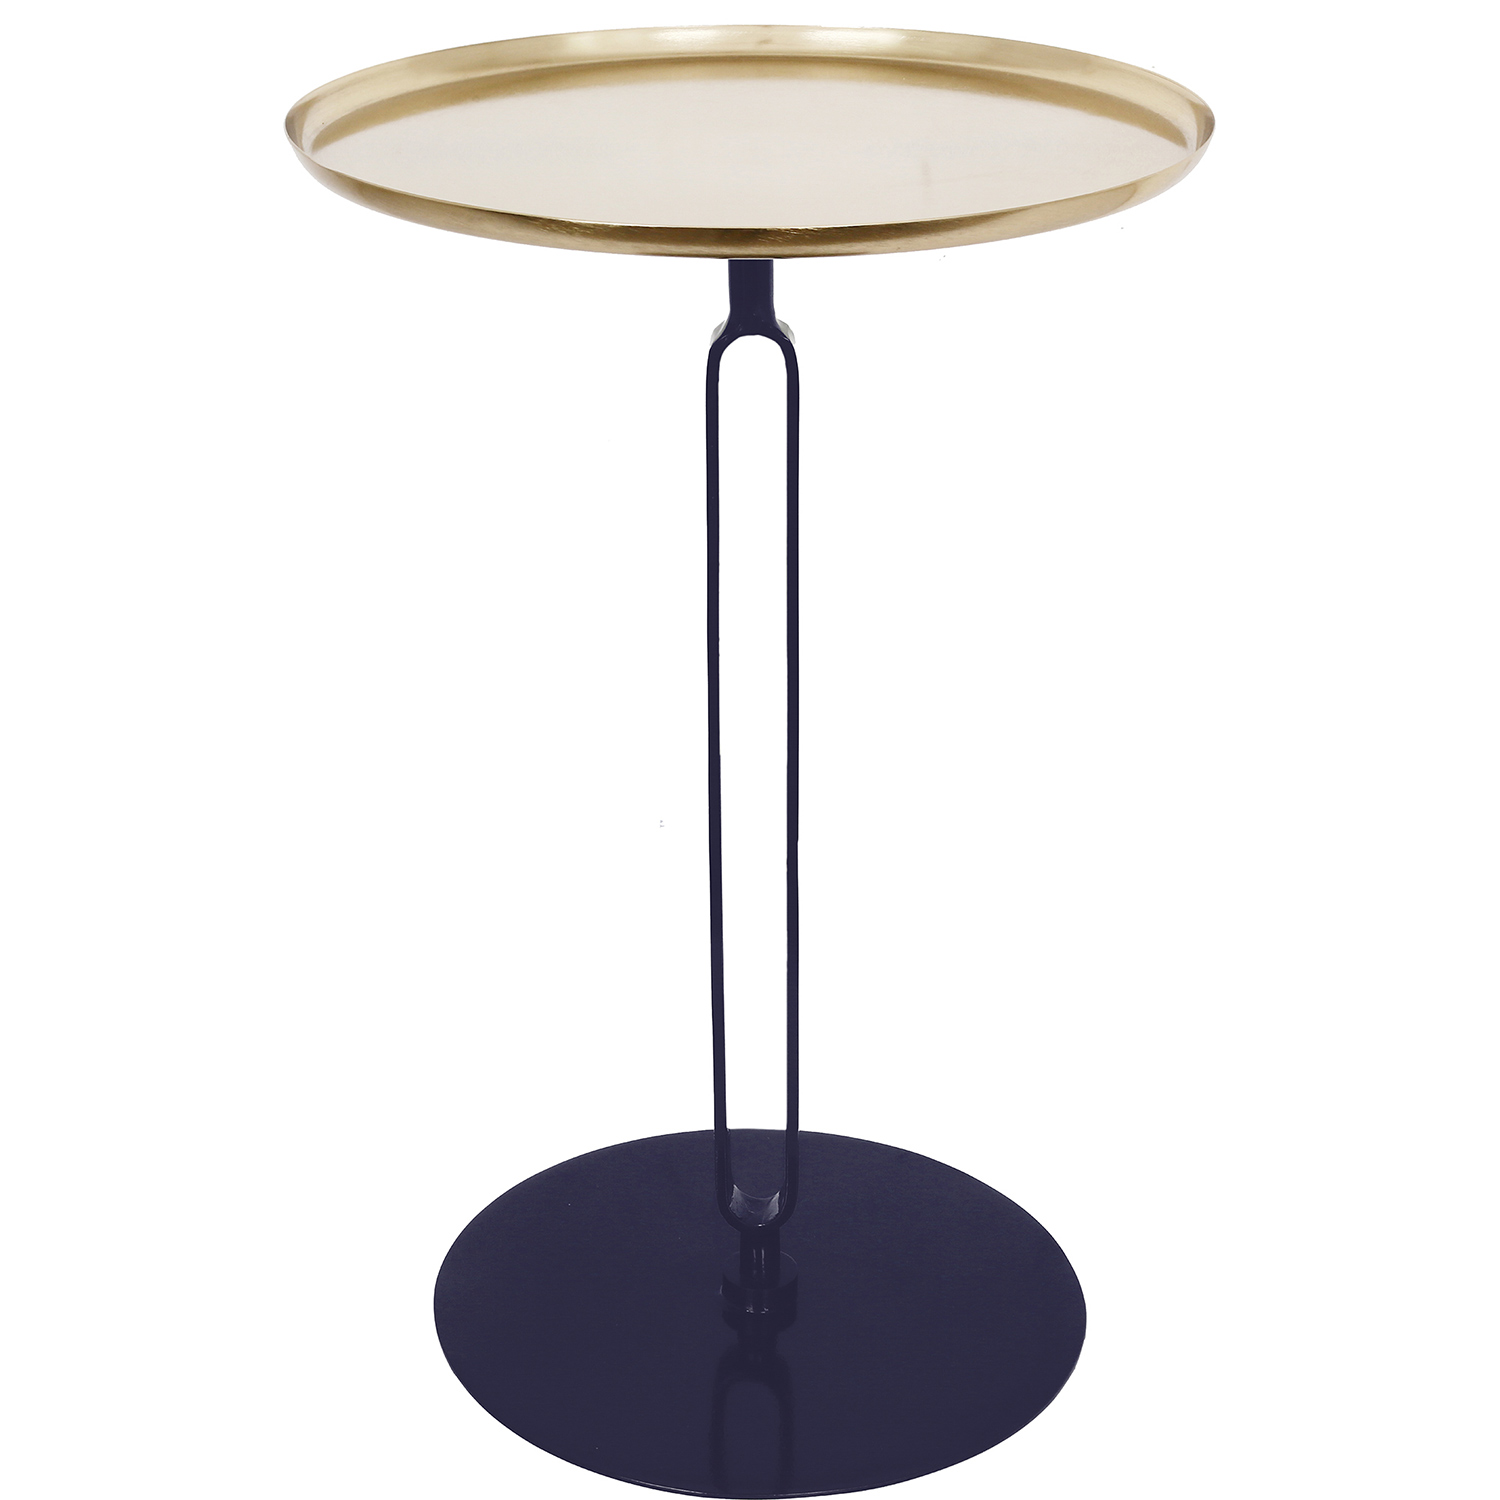 Ren-Wil Lader Accent Table - Gold/Dark Blue